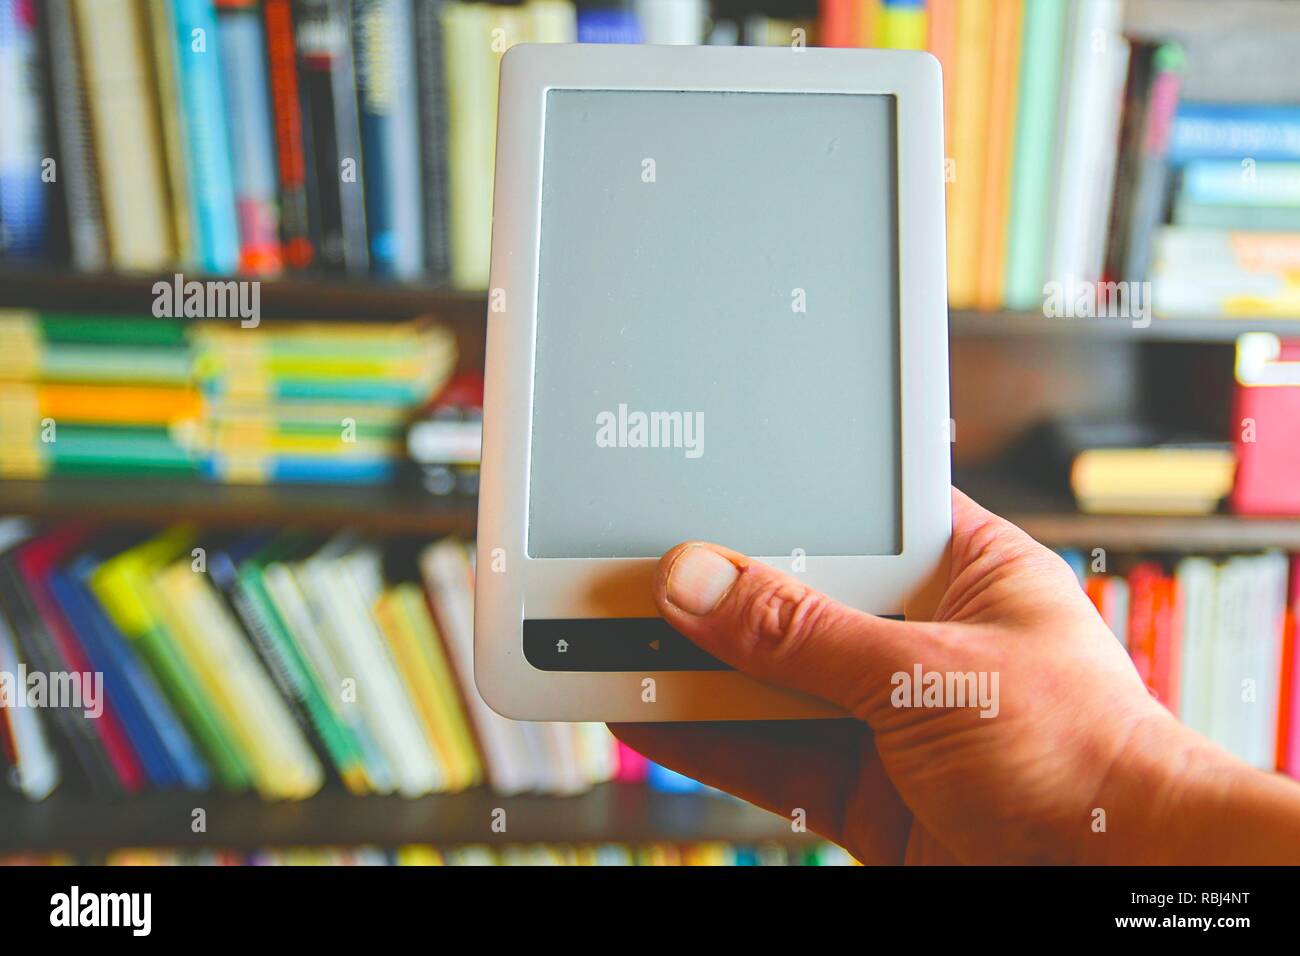 Ebook oder digitale Lesen tablet device. E-Buch in der Hand des Menschen.  Im Hintergrund ist das Regal mit hellen echte Bücher. Online shopping Bücher  Konzept Stockfotografie - Alamy